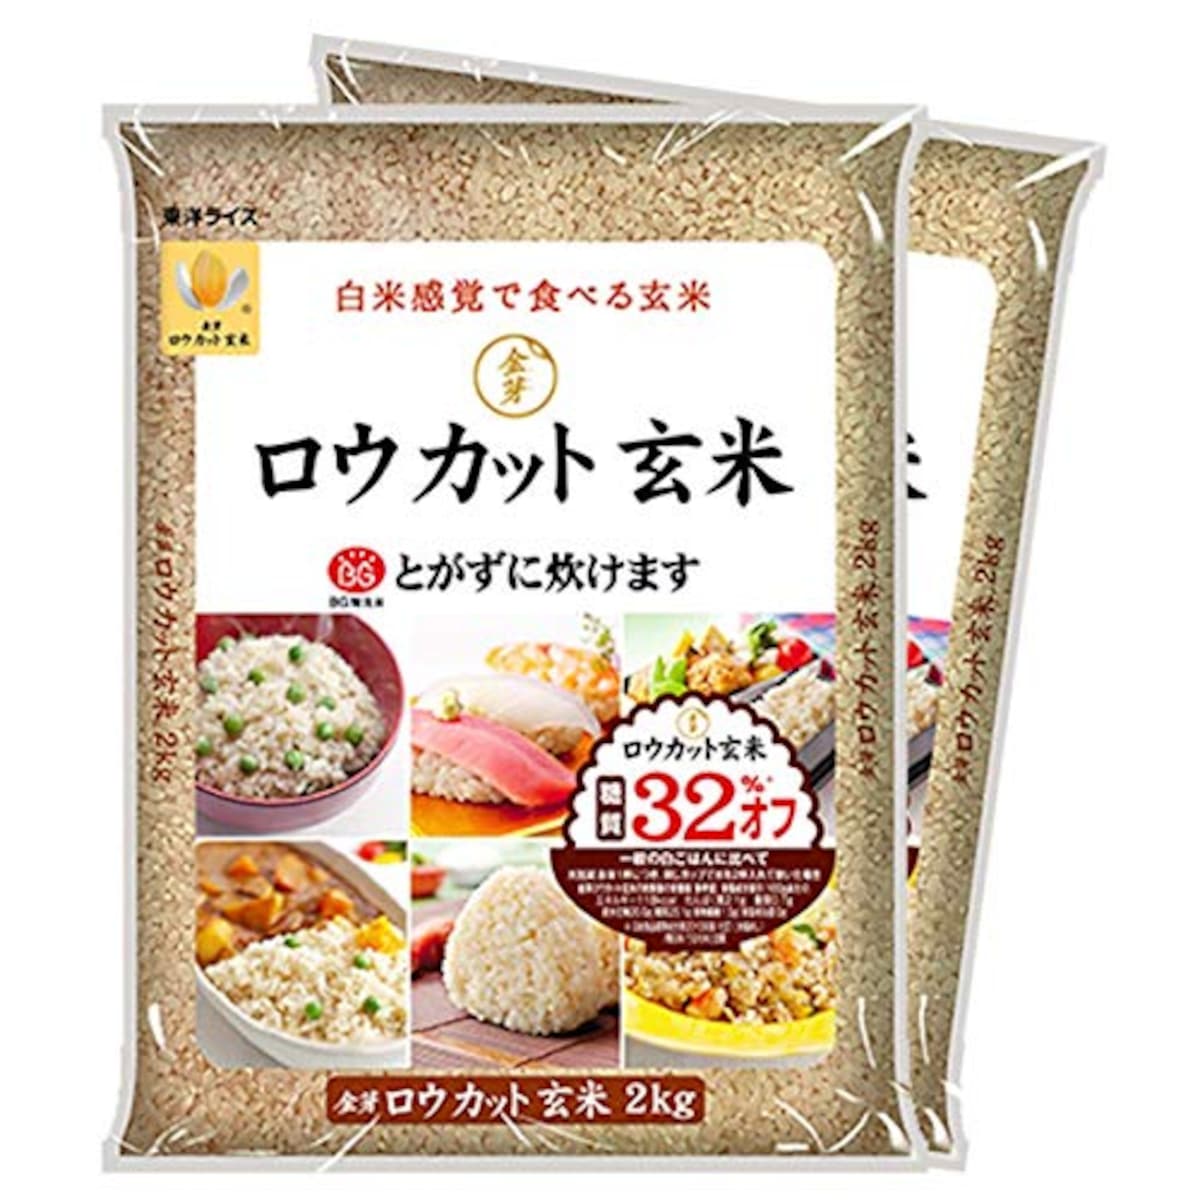 金芽ロウカット玄米 4kg【2kg×2】